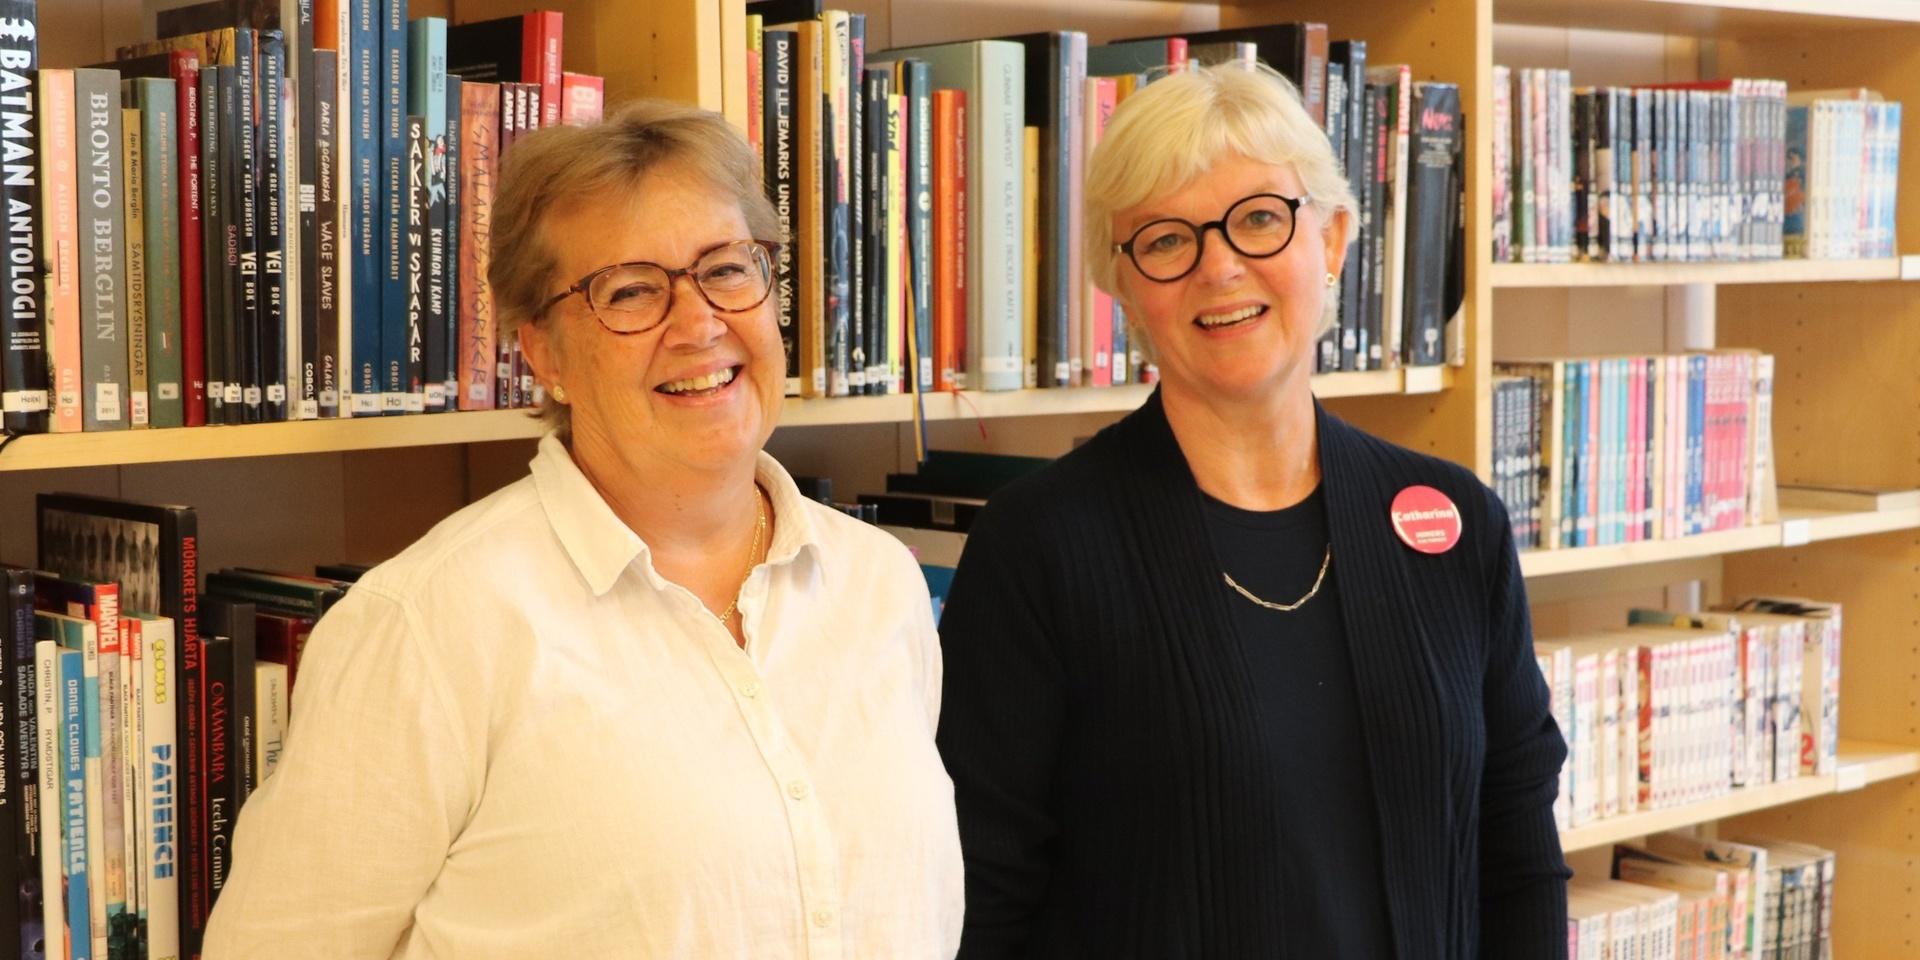 Catarina Stake och Catharina Haqvinsson är båda biblotikarier på Kungälvs bibliotek. De har båda sett fram emot att möta bokslukare igen.